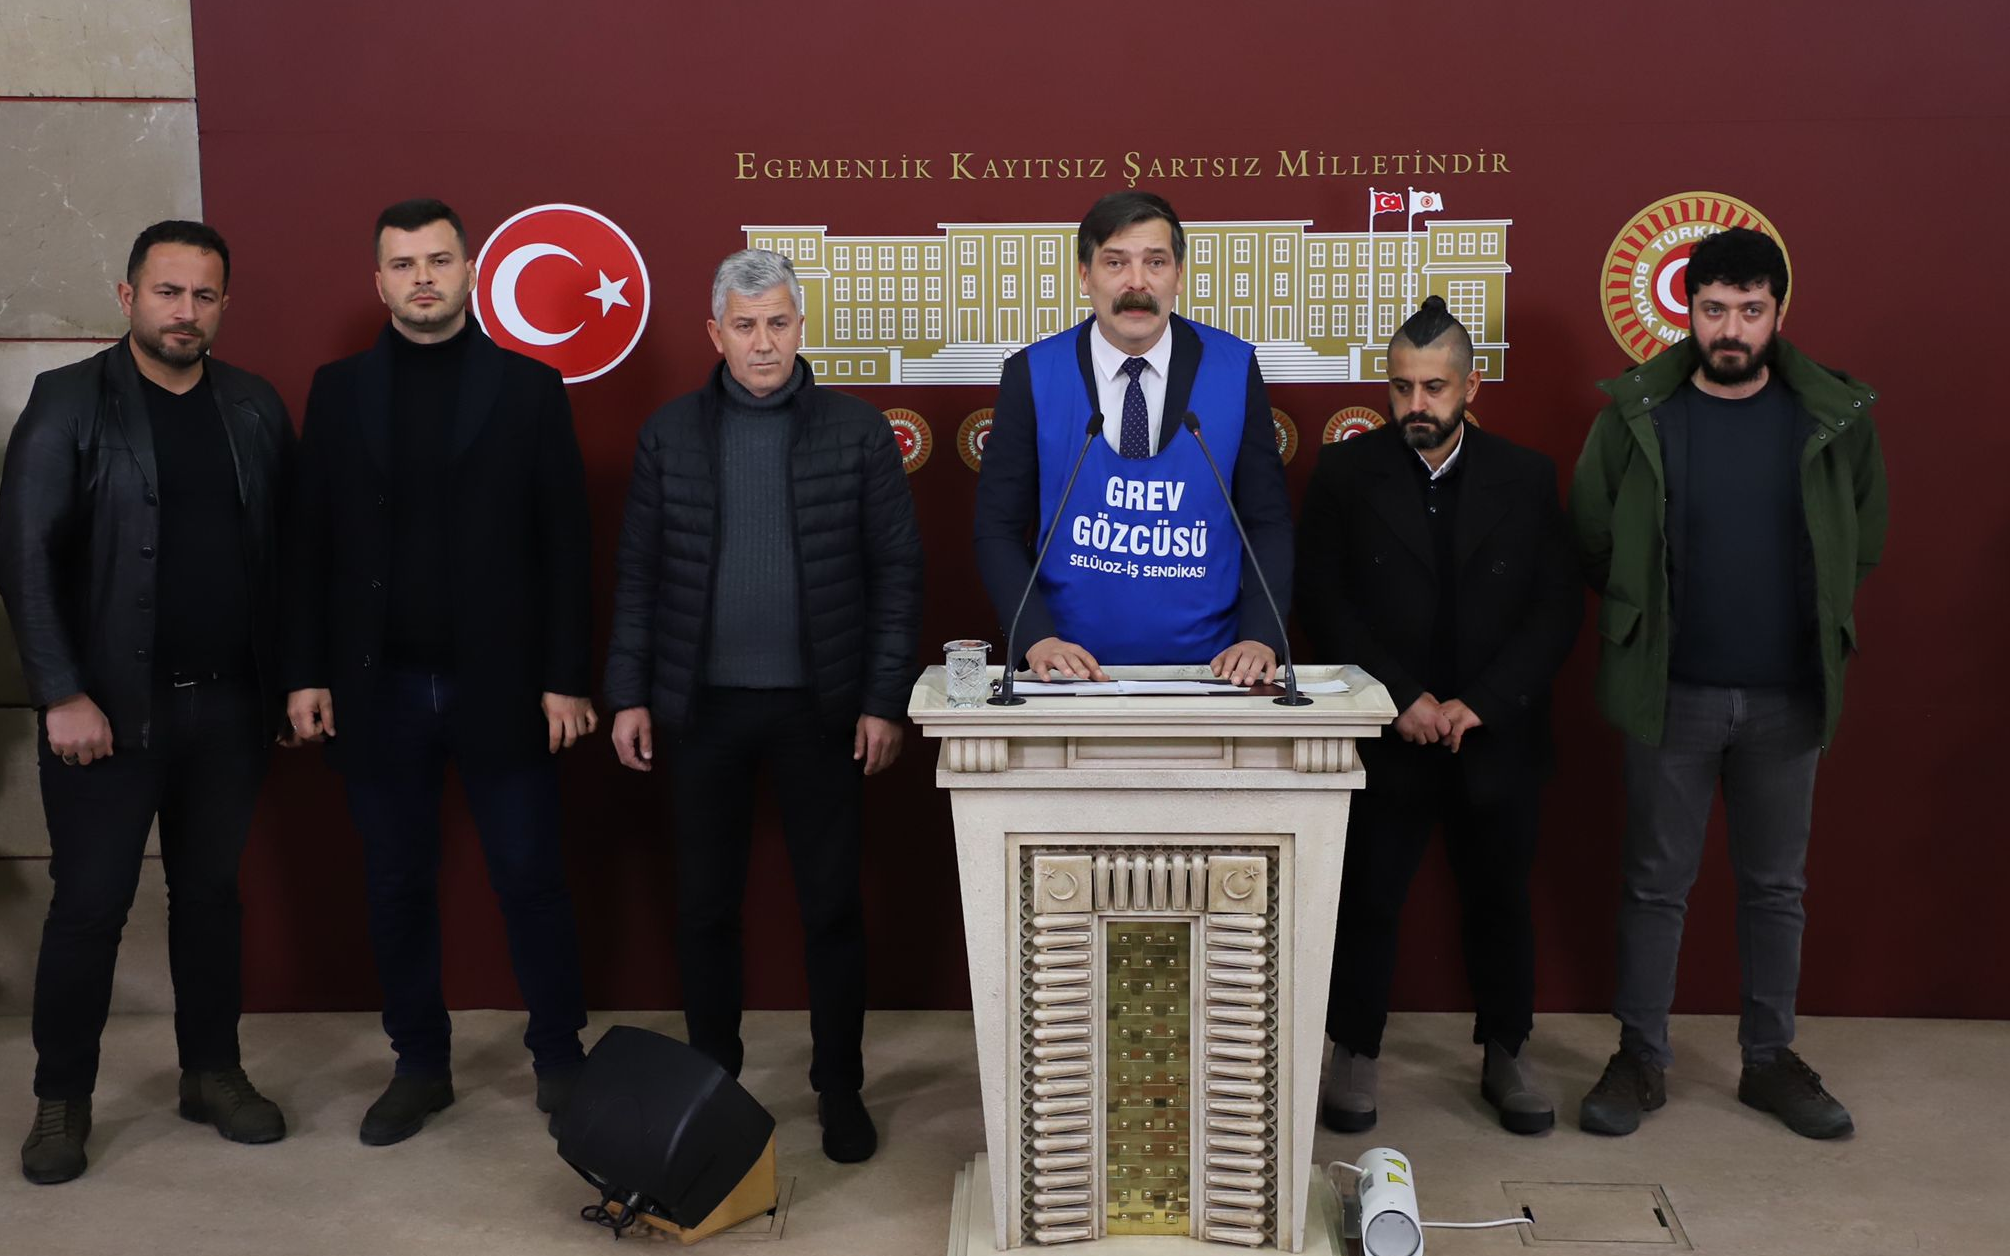 Erkan Baş ‘grev gözcüsü’ önlüğünü giydi, Kartonsan işçilerinin sesini Meclise taşıdı